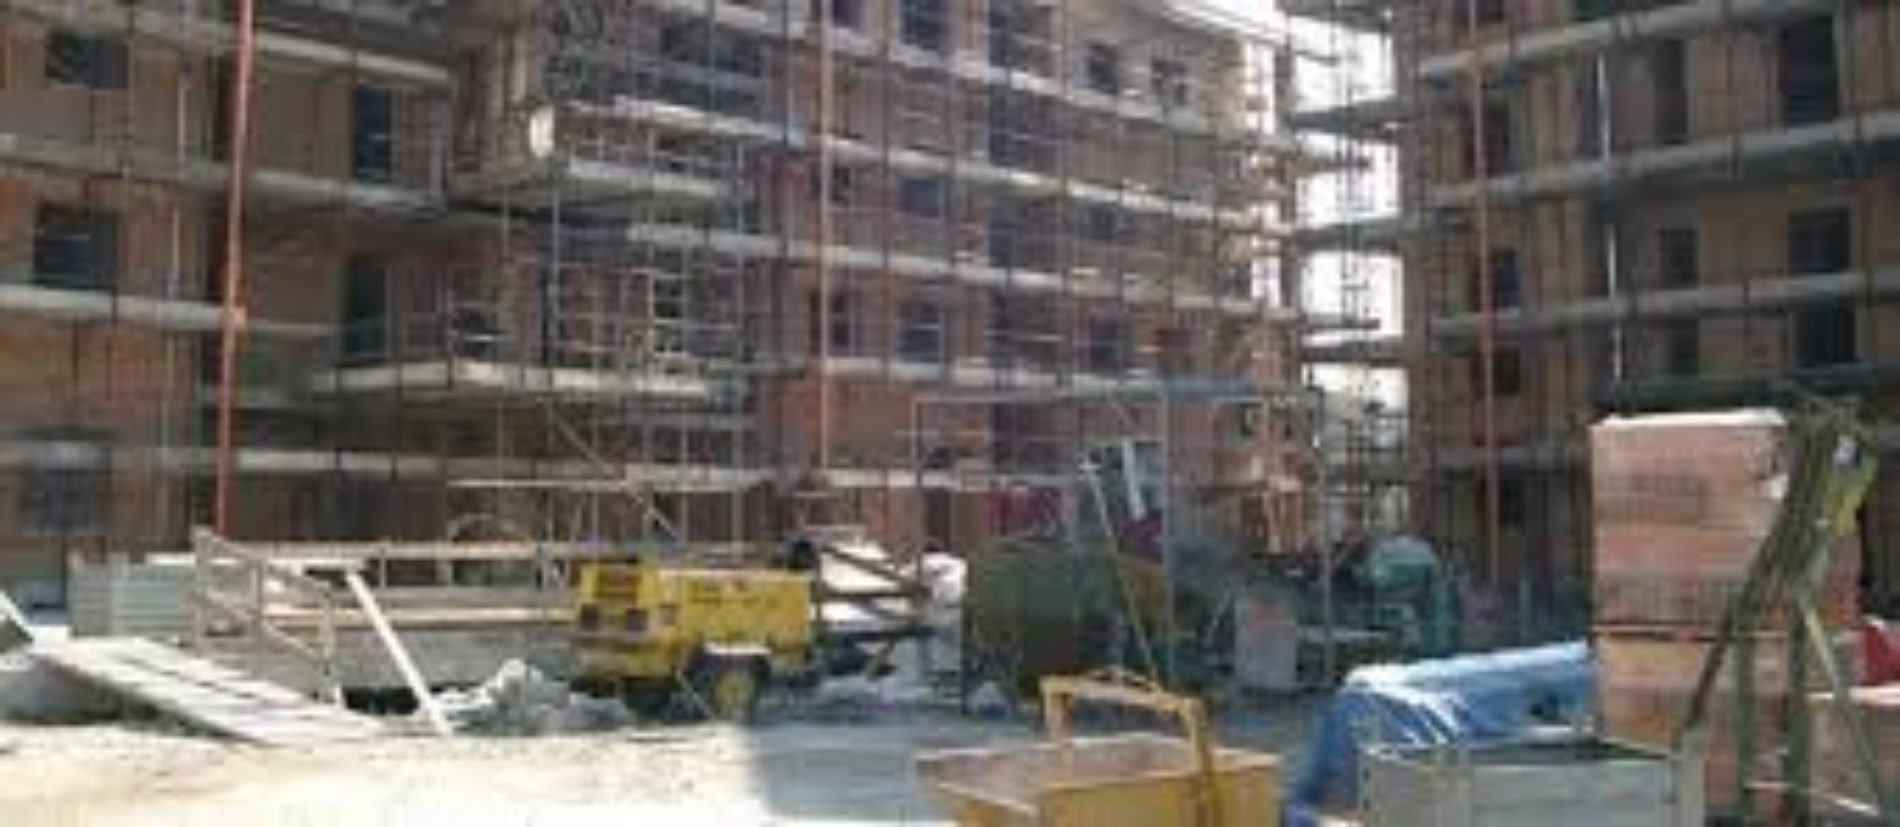 Barrafranca. “Totale paralisi dell’attività edilizia” i liberi professionisti barresi chiedono incontro con commissione prefettizia.